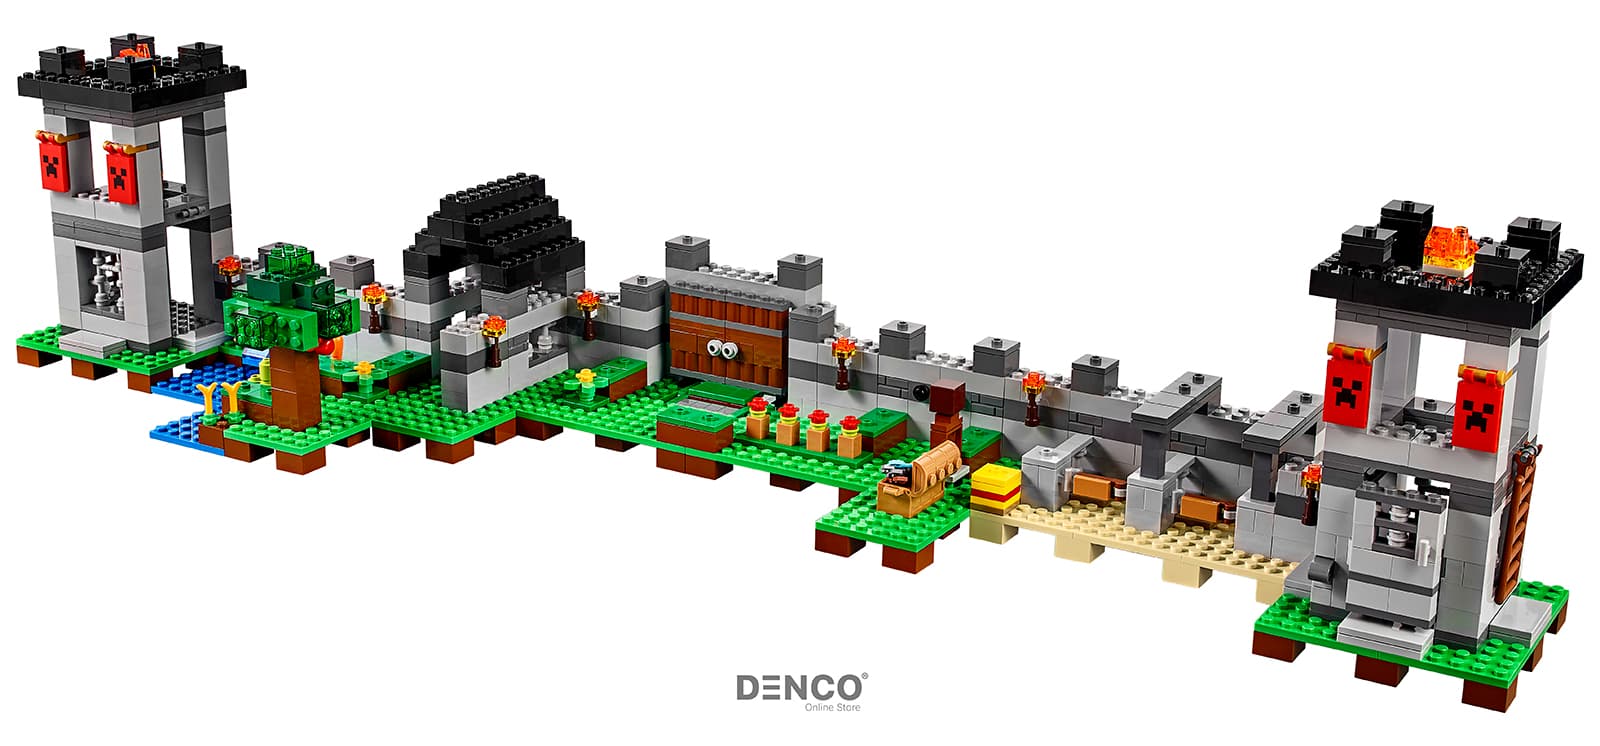 Конструктор «Крепость» 10472 (Minecraft 21127) / 990 деталей